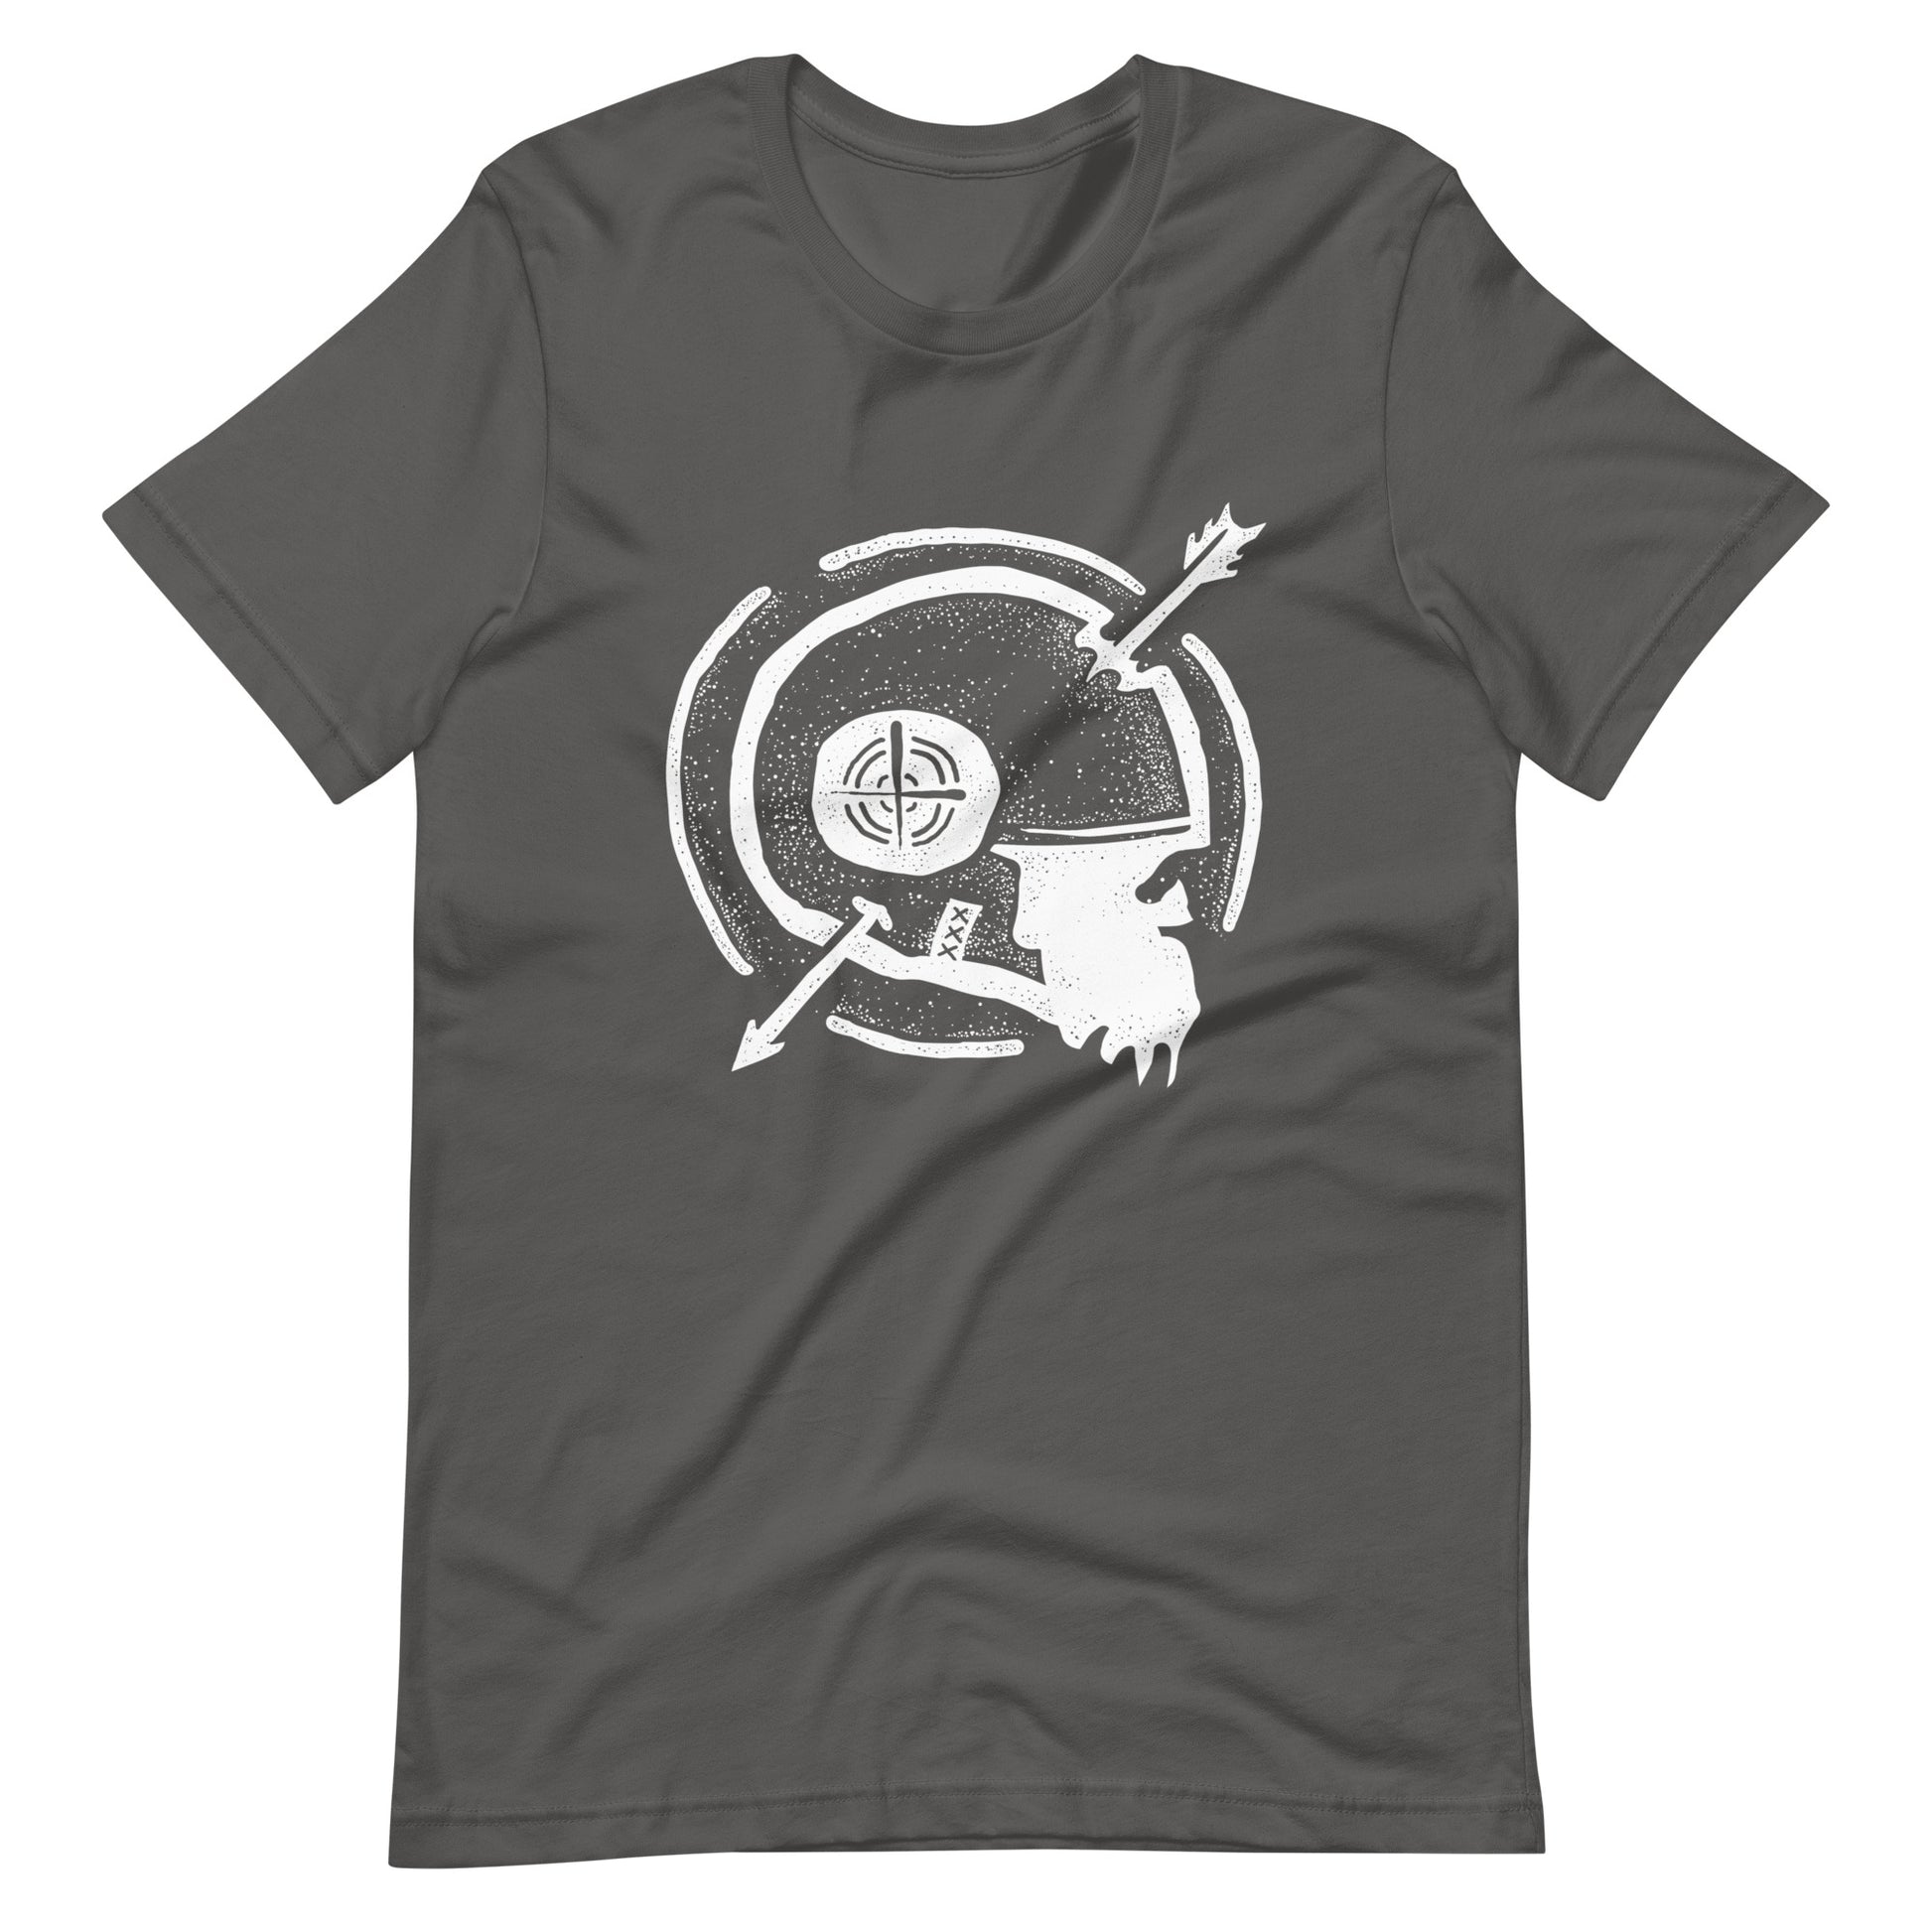 Dead Arrow White - Men's t-shirt - Asphalt Front